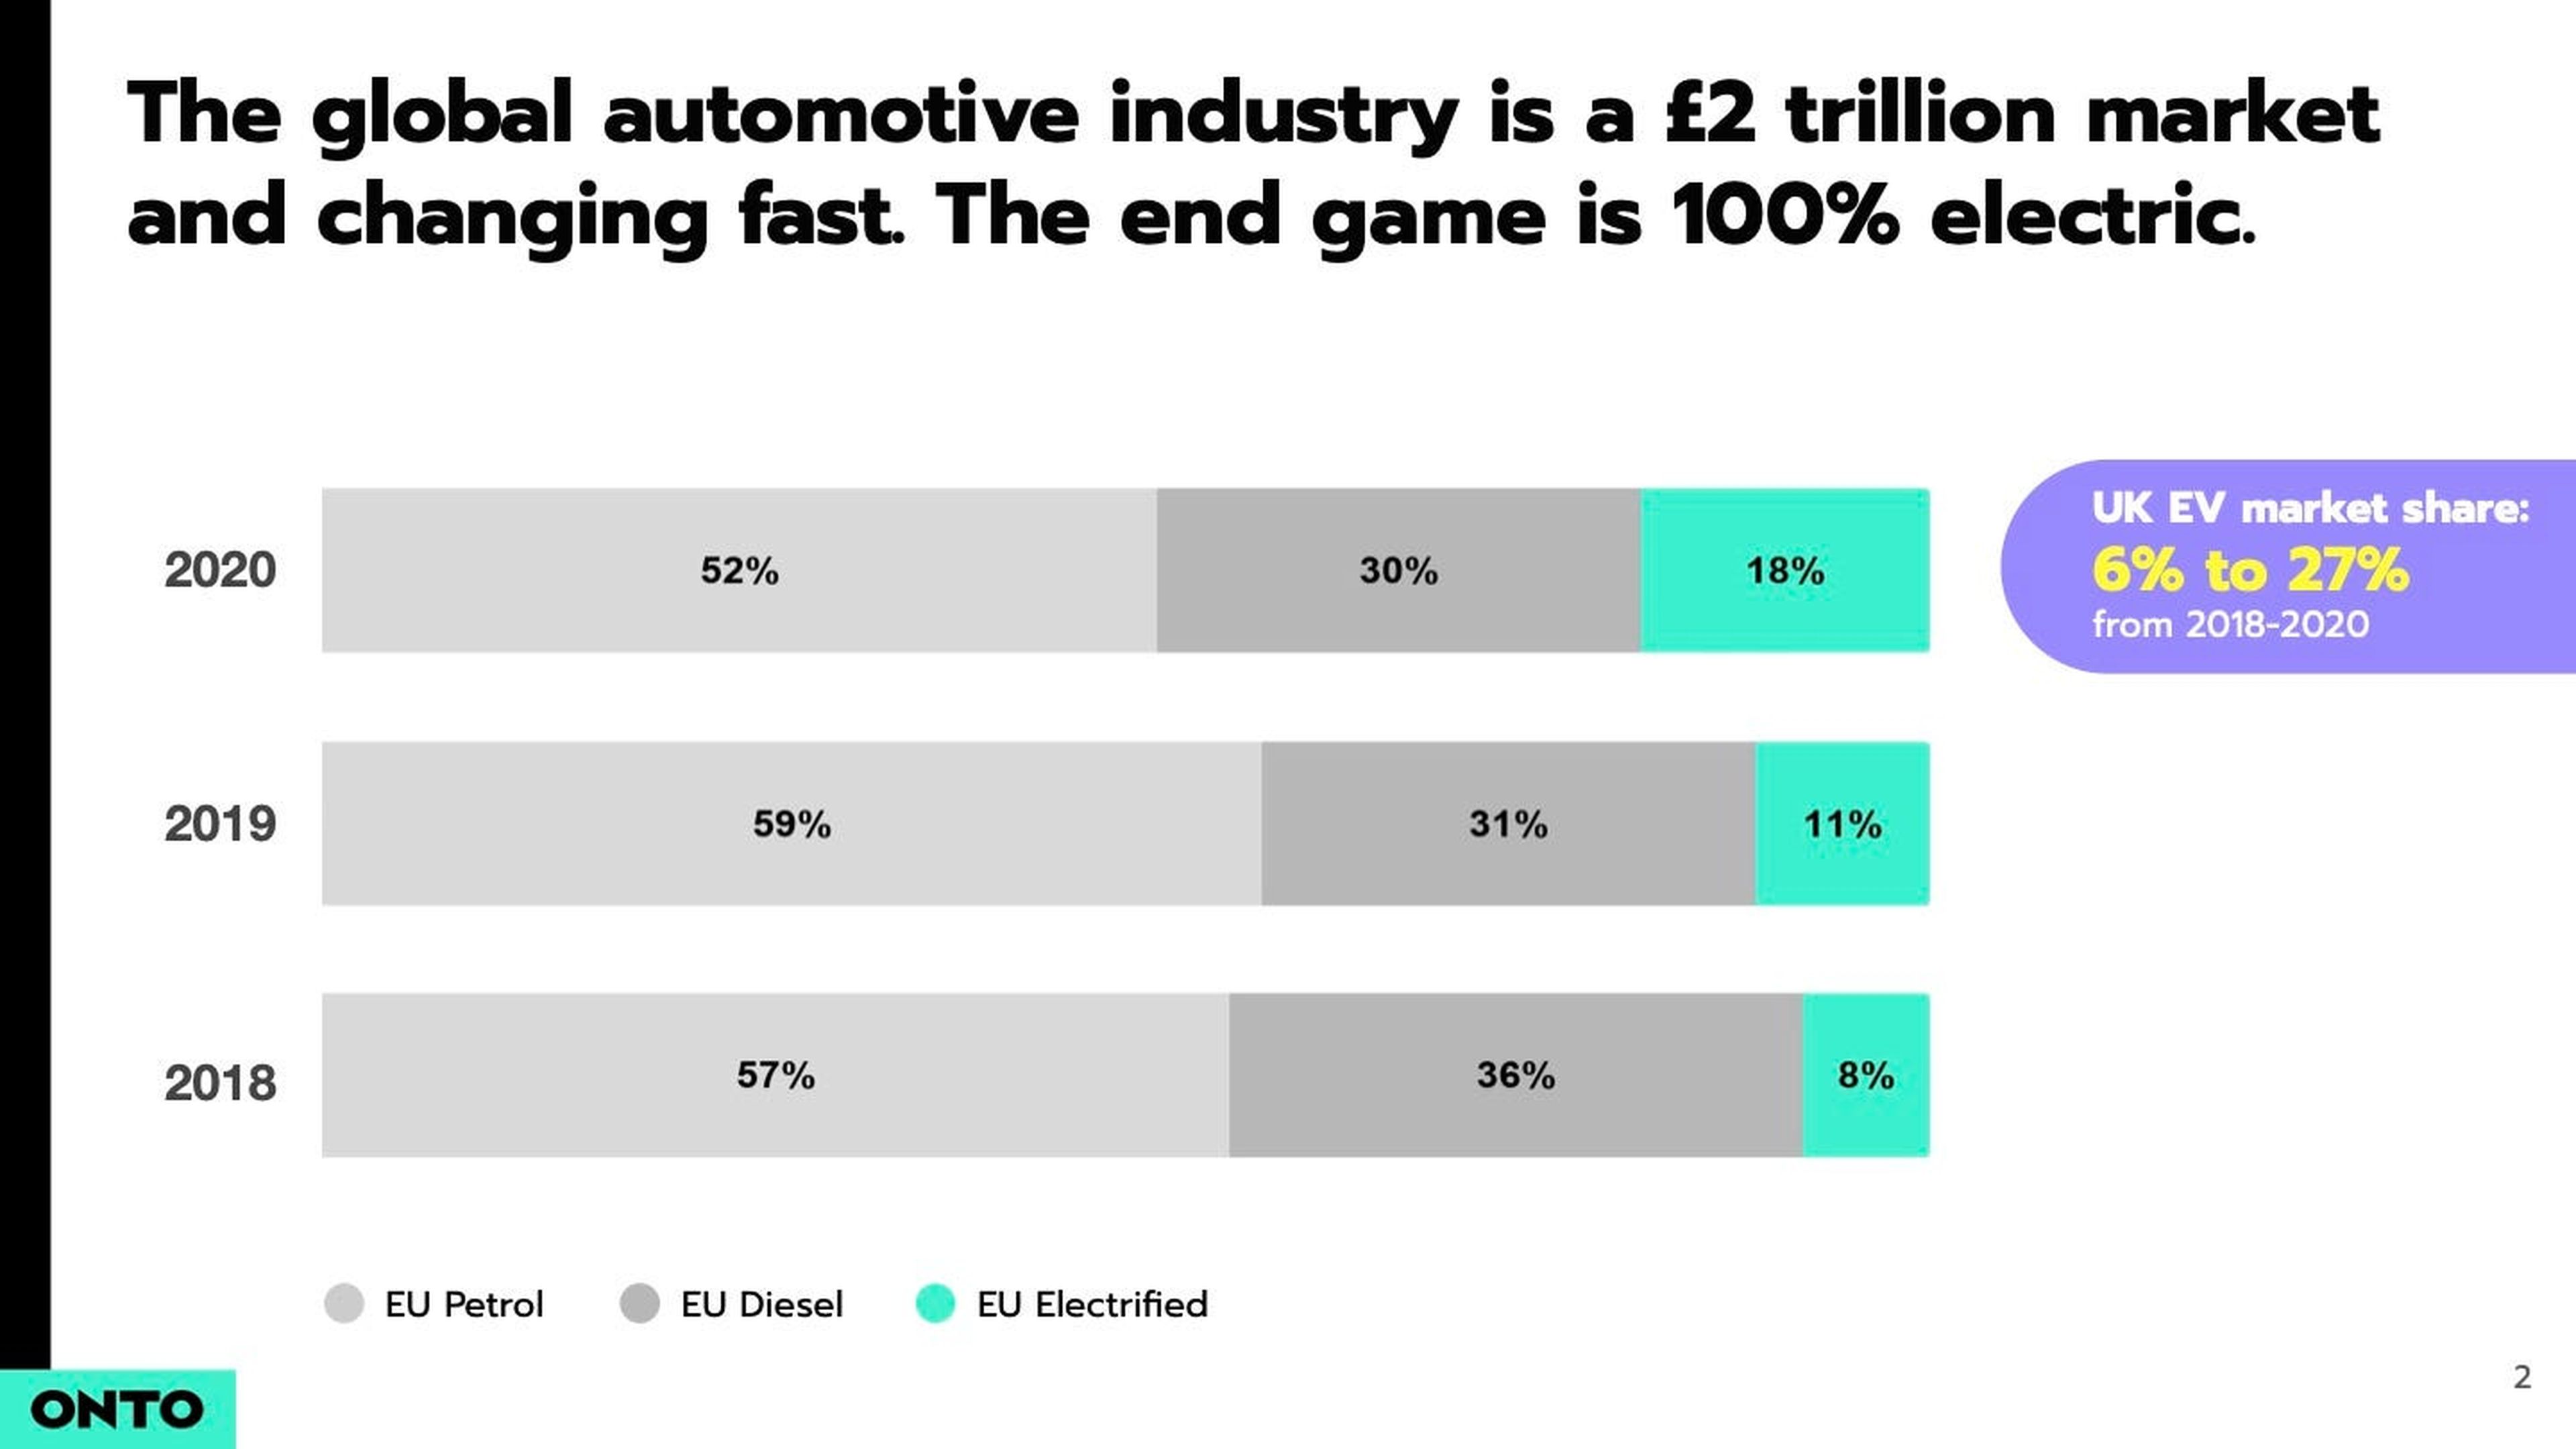 La industria mundial del automóvil está valorada en más de 2,5 billones de euros y el futuro es 100% eléctrico, establece el gráfico.